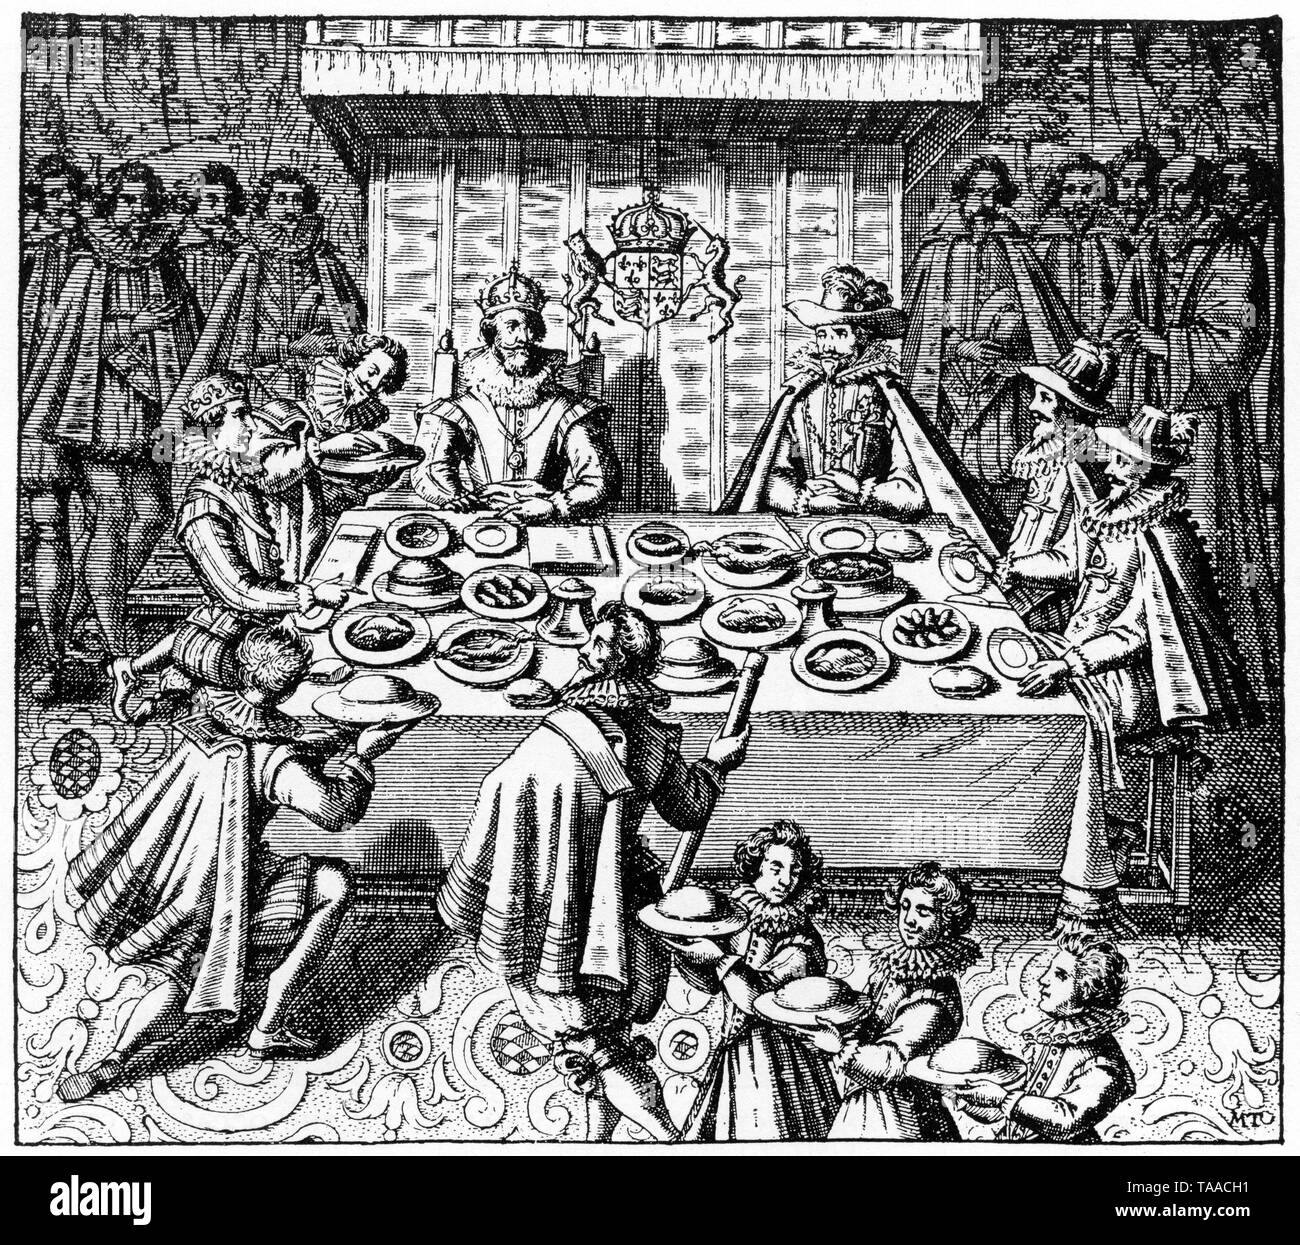 König James I (1566-1625) Schlemmen mit den spanischen Botschafter, die Prinz Charles den künftigen König Charles I (1600-1649) und George Villiers, Herzog von Buckingham 1 KG (1592-1628) nach ihrer Rückkehr aus Madrid, 1623 begleitet. Stockfoto